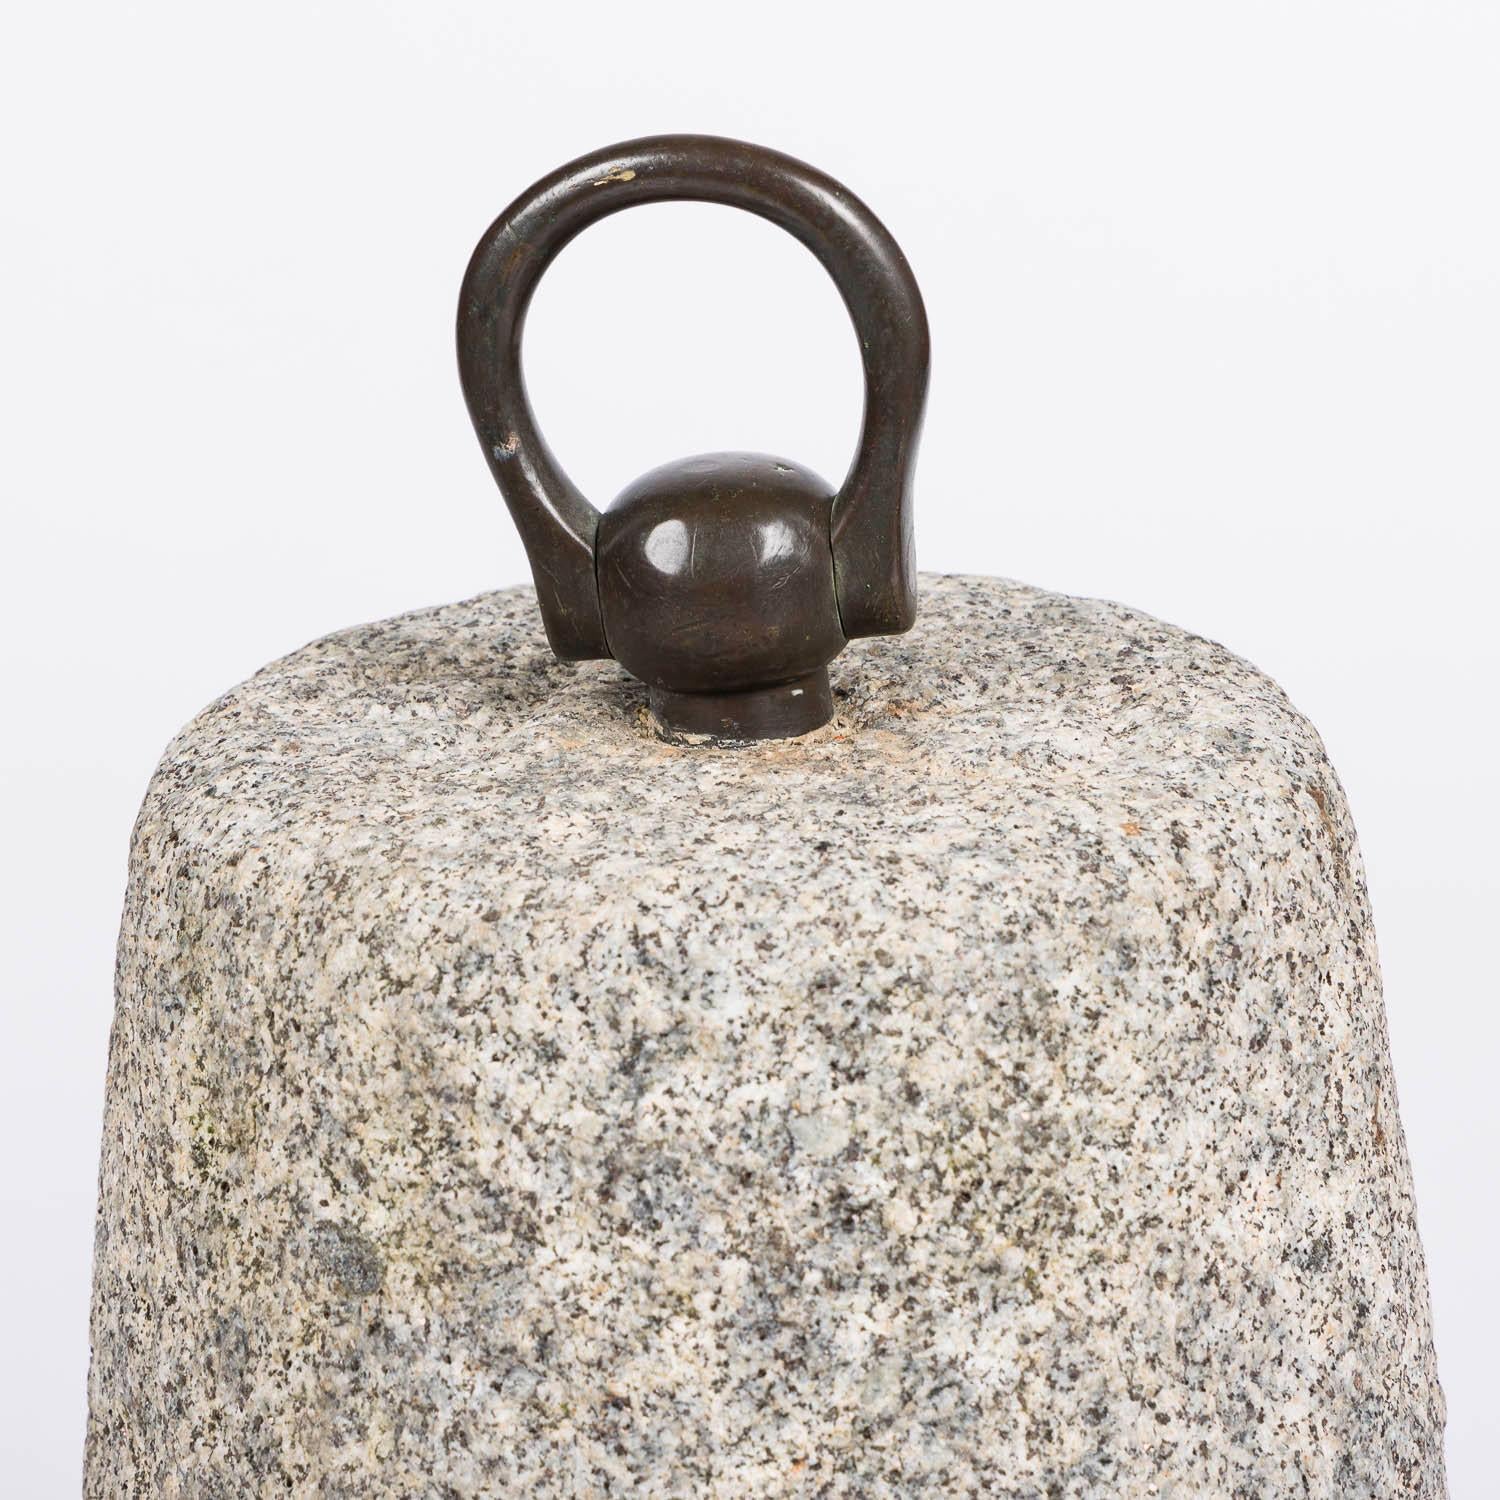 Une pierre d'attache sculptée à la main dans du granit avec une boucle en bronze.

Poids approximatif : 20 kilos.